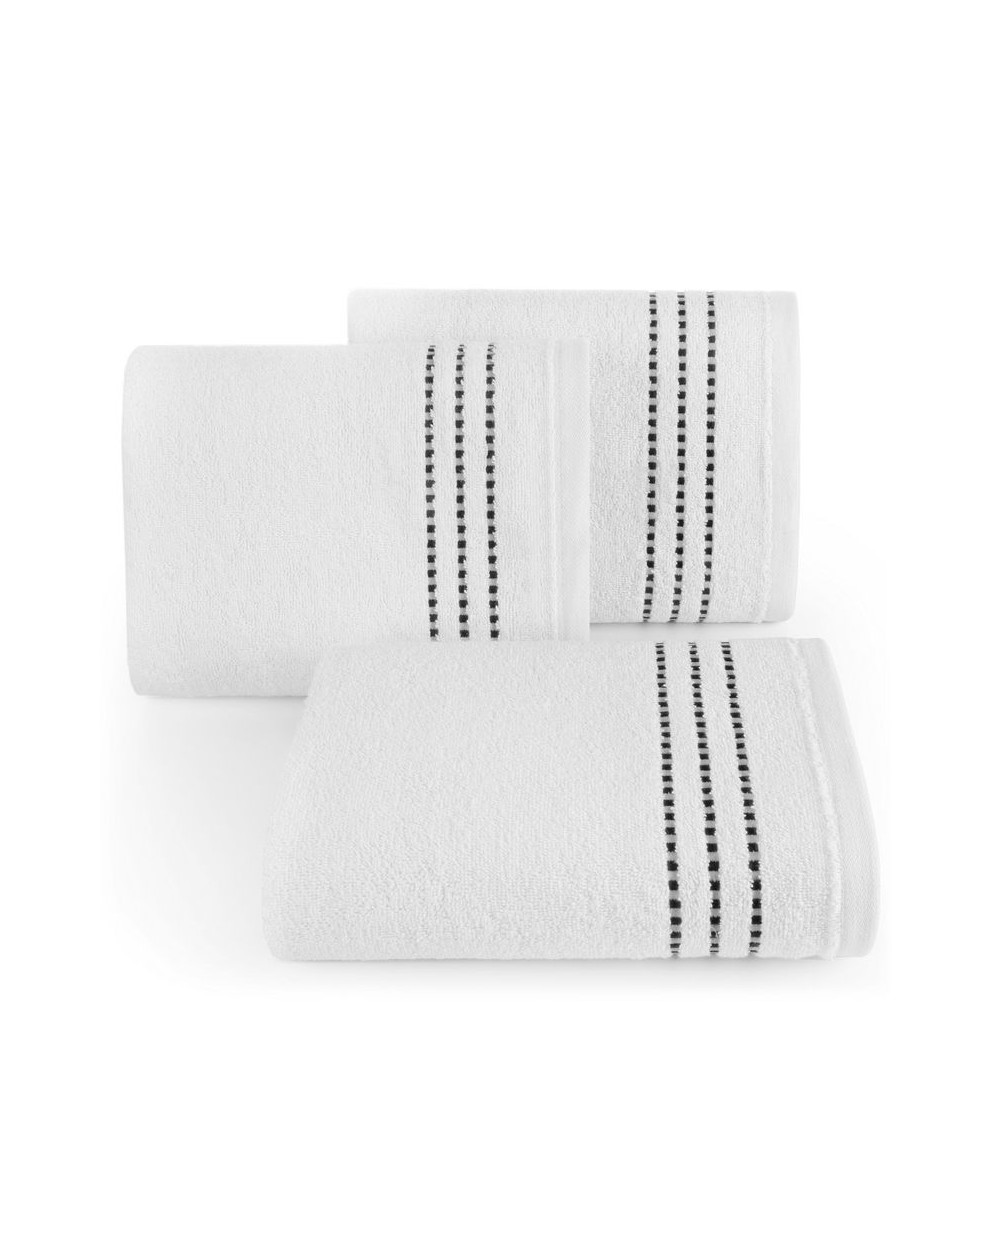 Ręcznik bawełna 30x50 Fiore biały